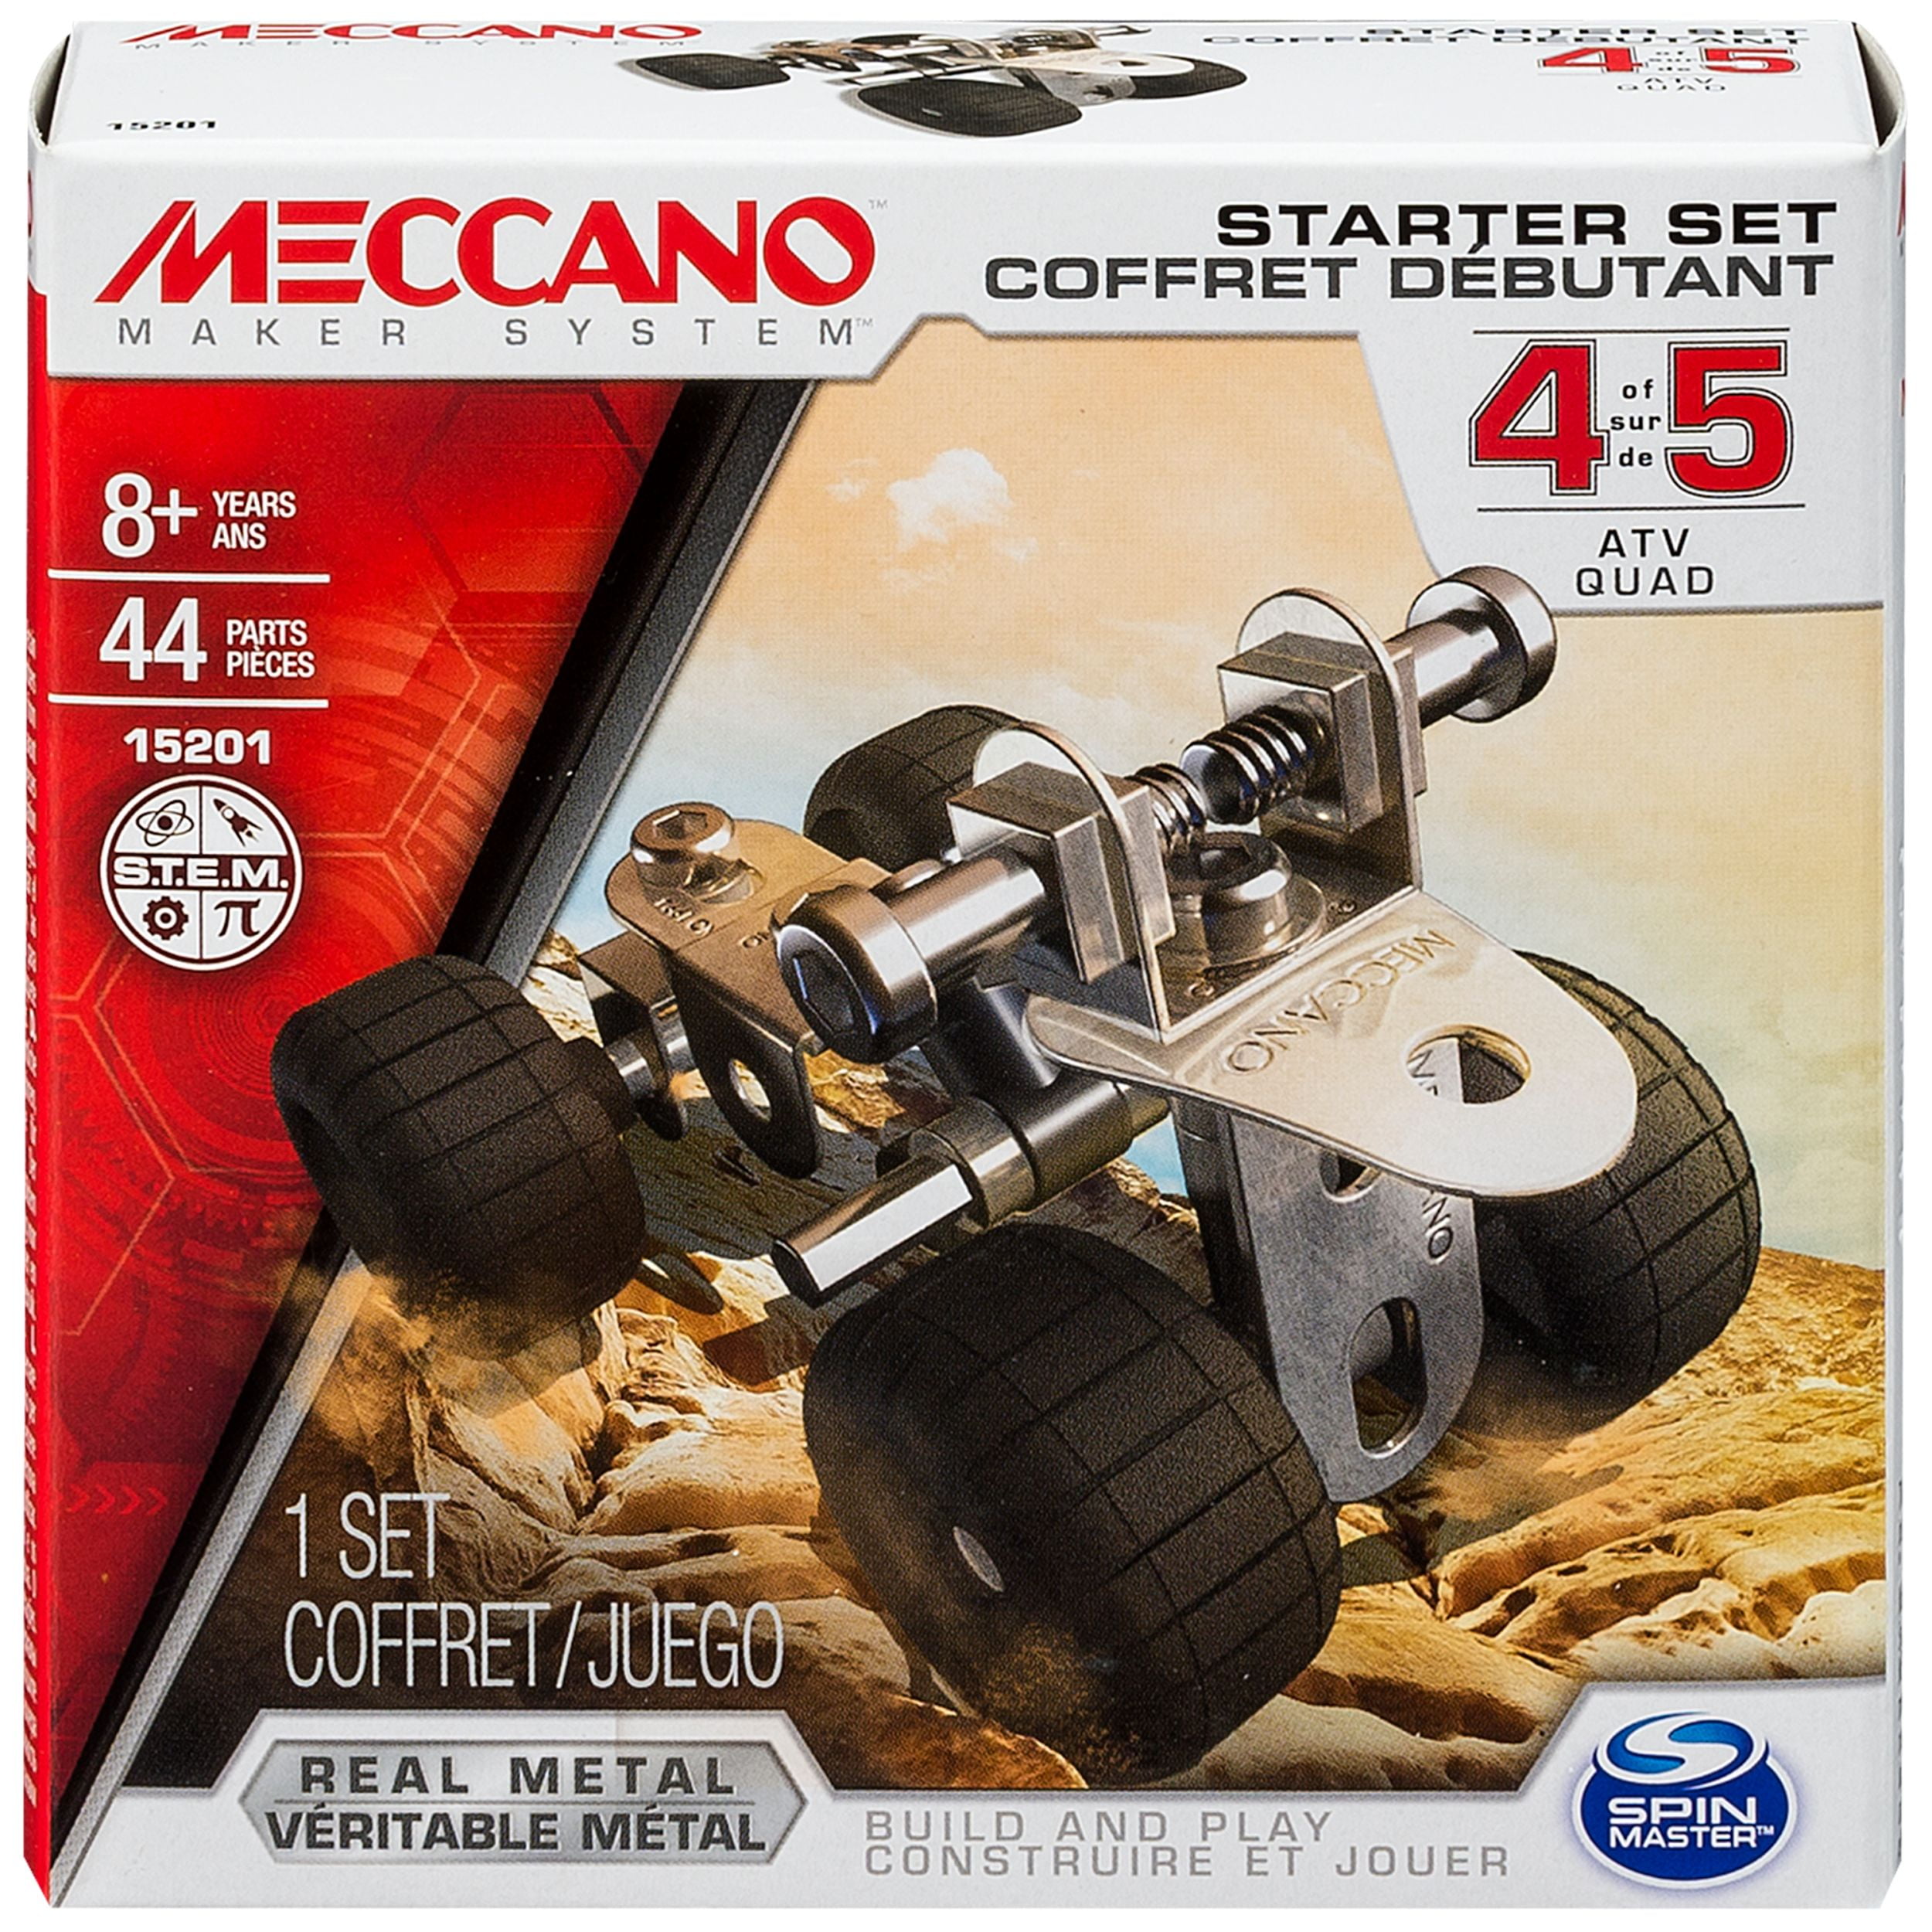 Meccano by Erector, Starter Set, ATV Model Kit 